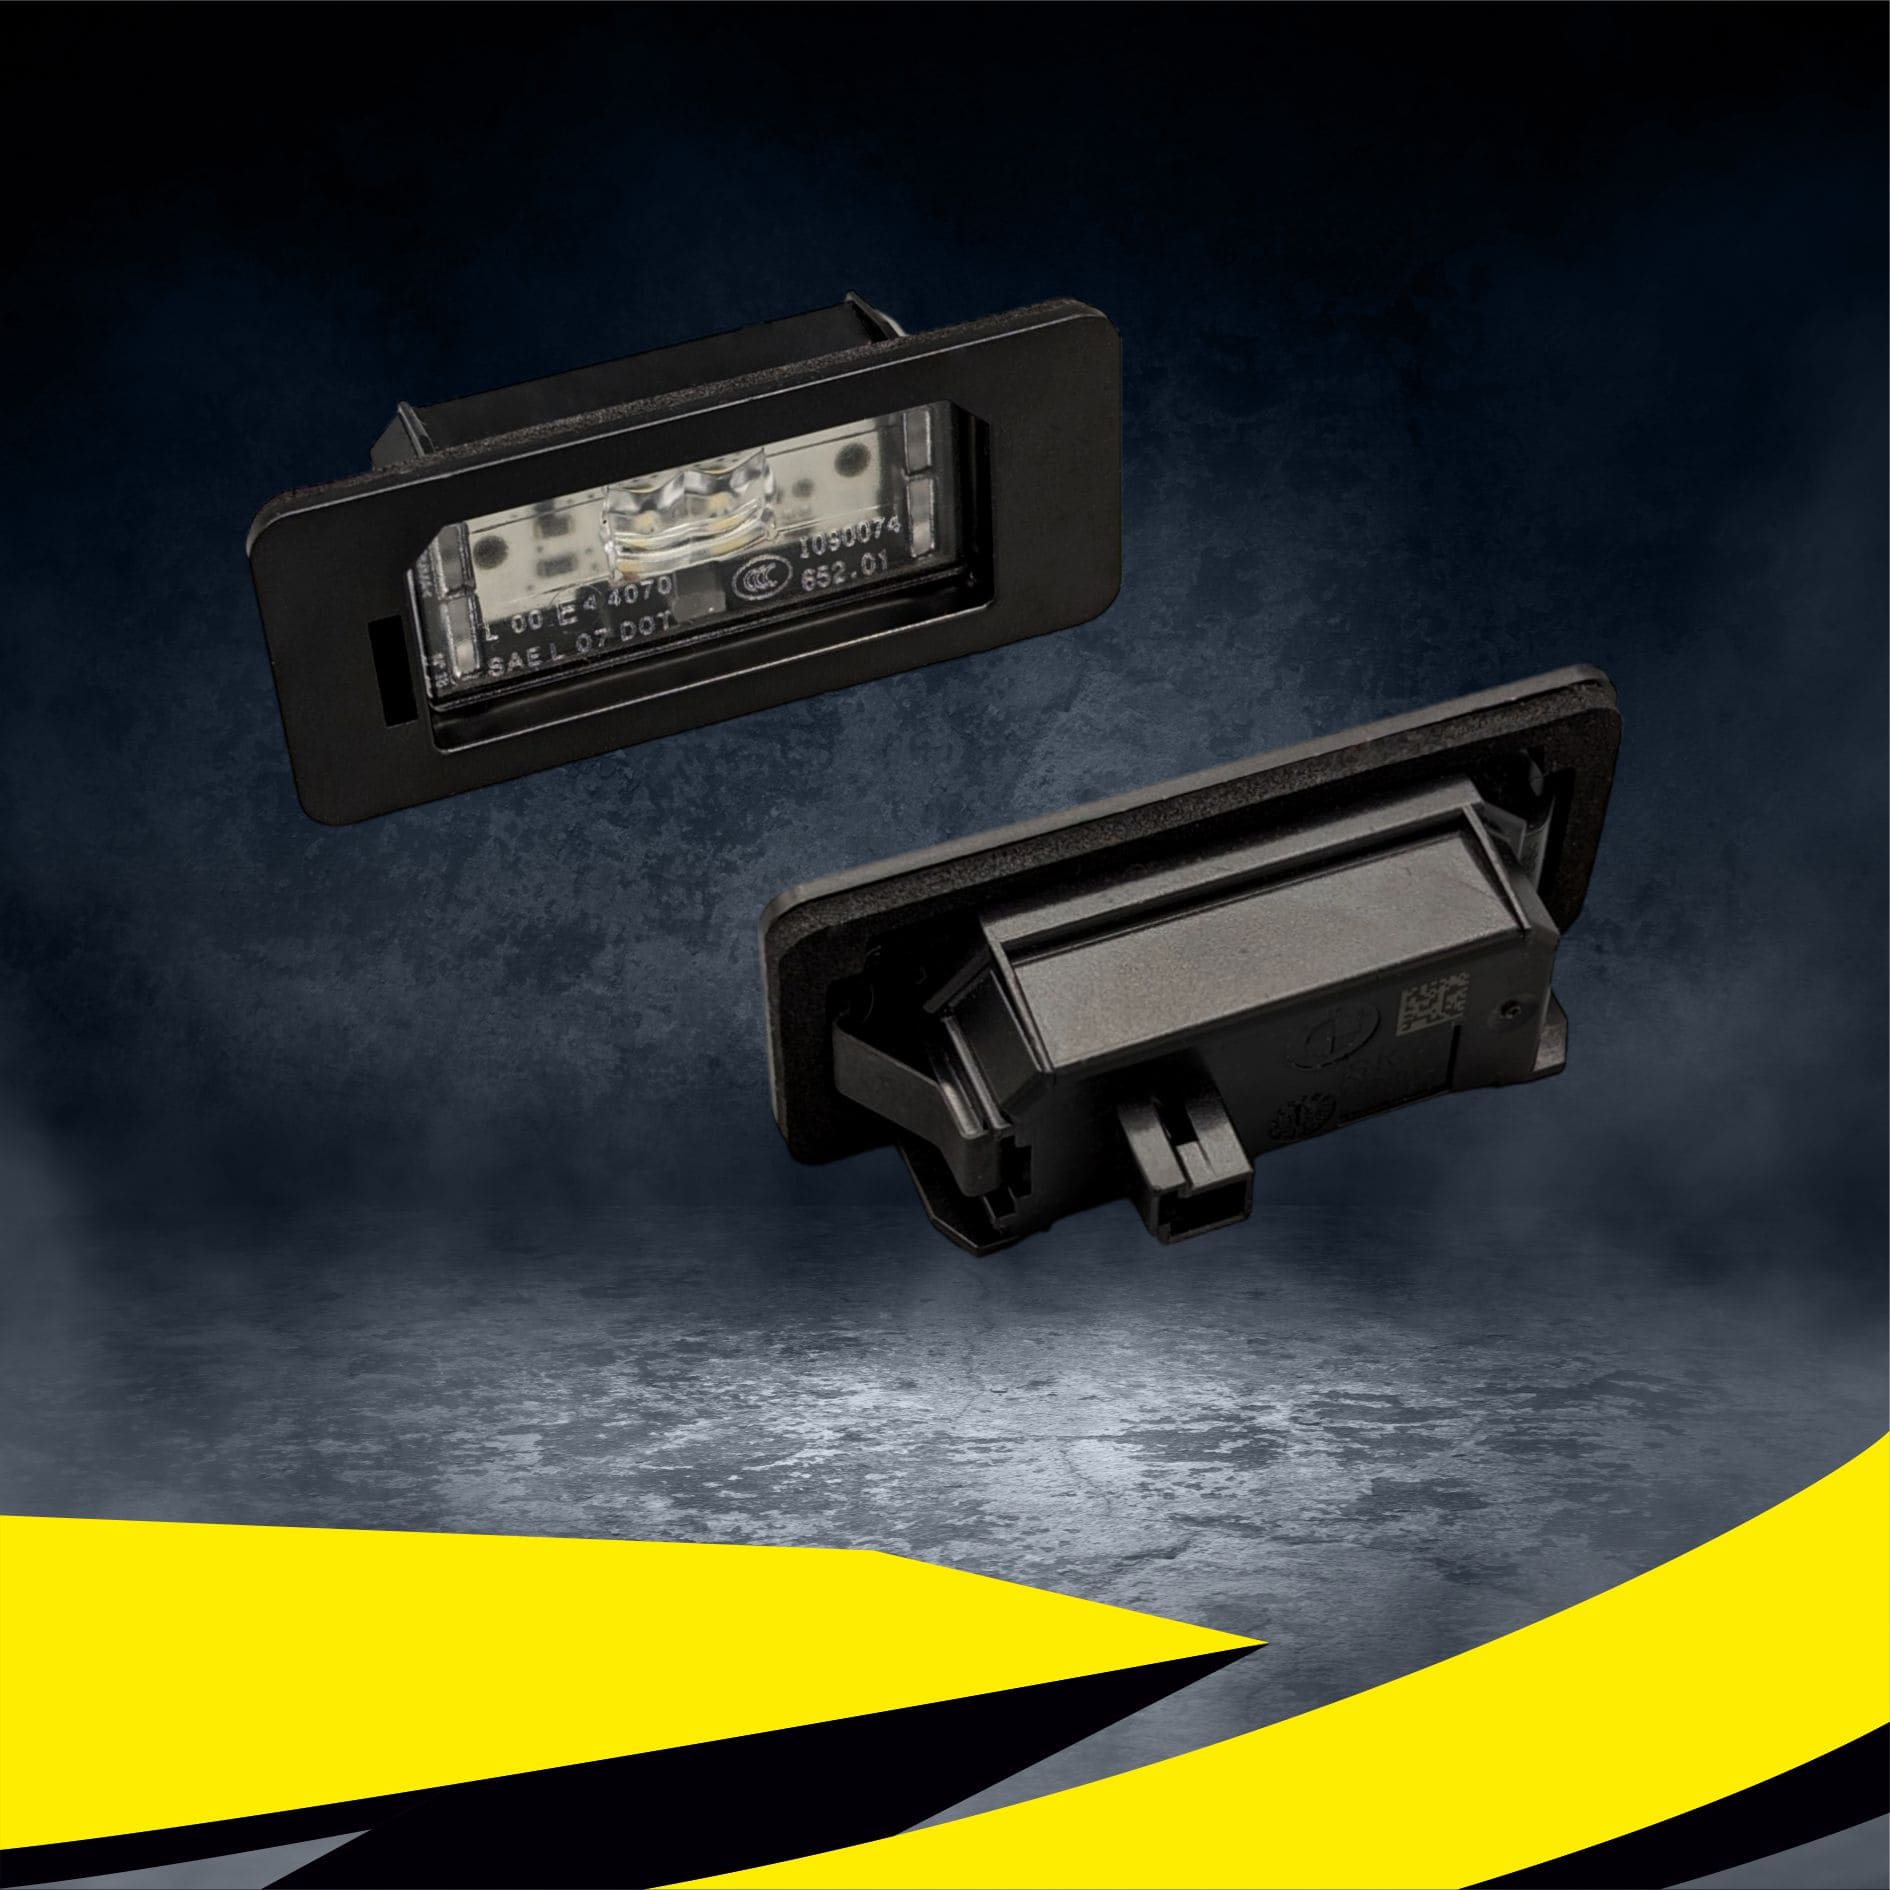 Kaufe Kfz-Kennzeichenbeleuchtung, Auto-Styling, für Volvo S80 XC90